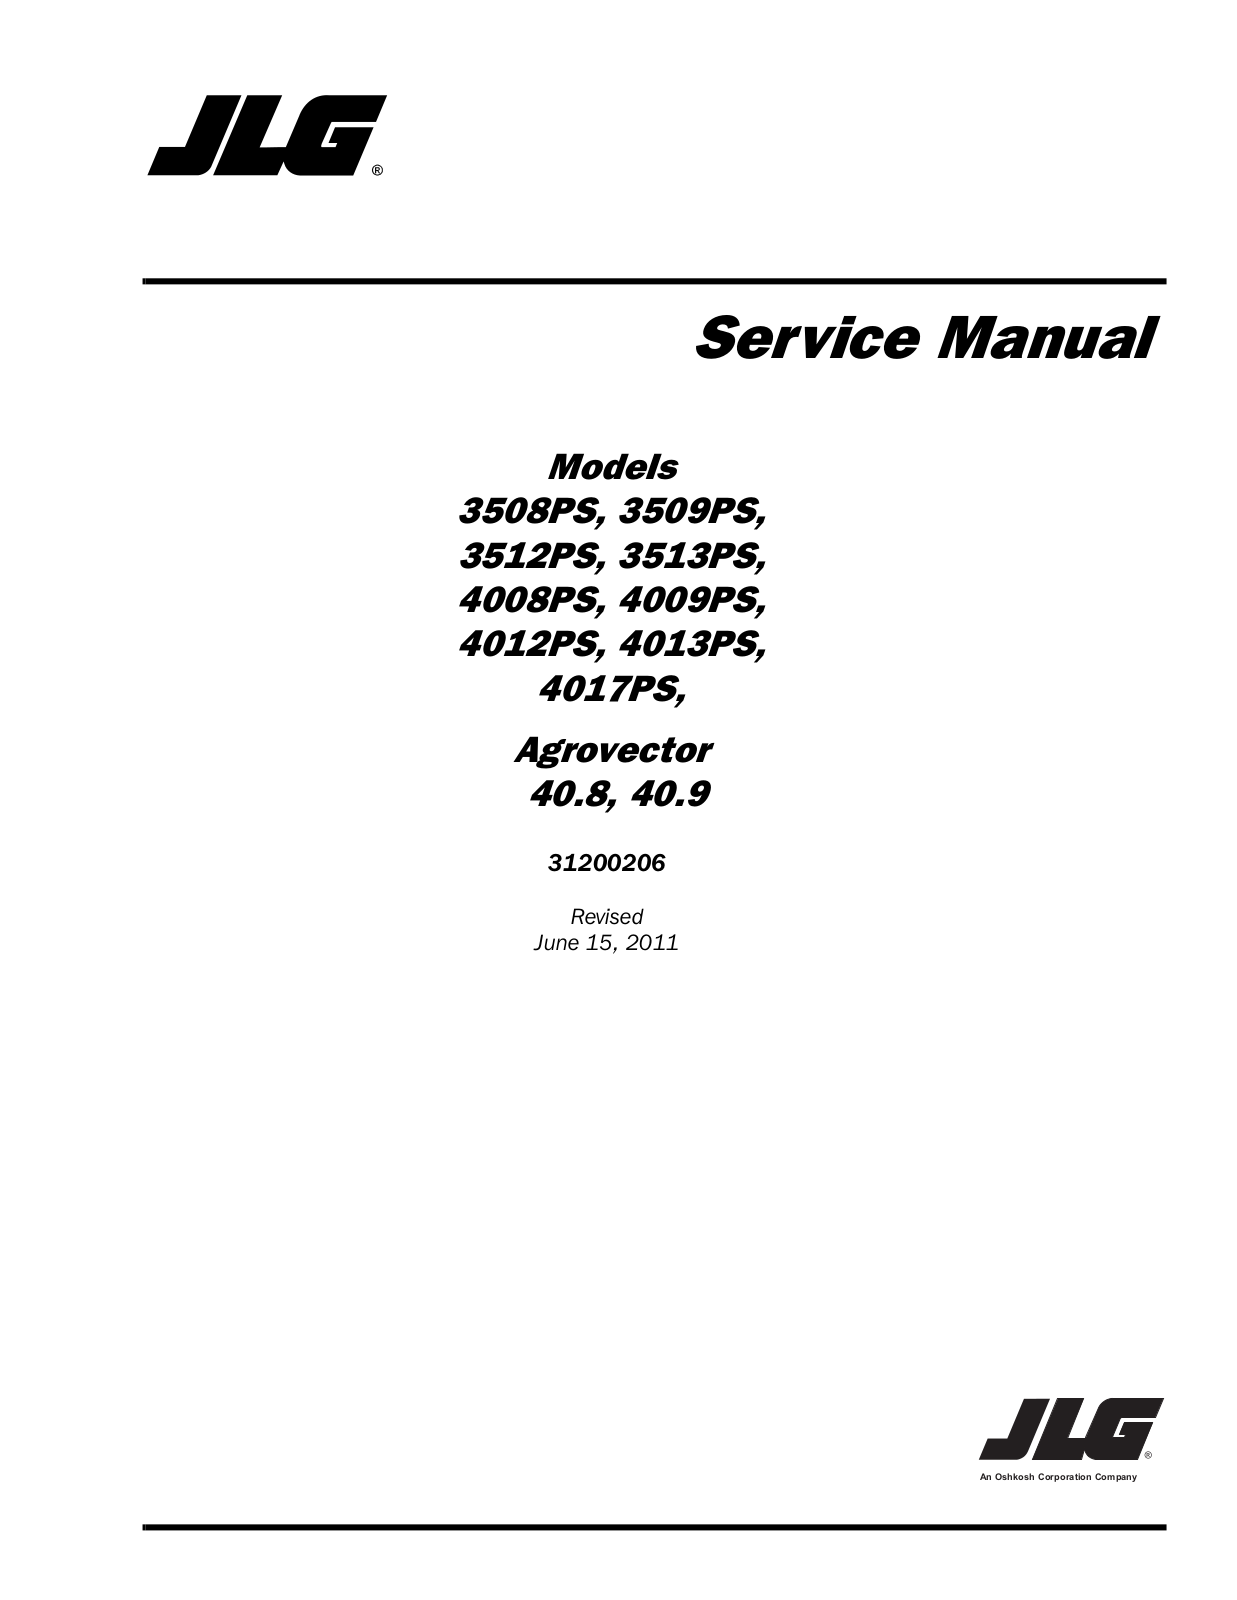 JLG 4013PS Service Manual